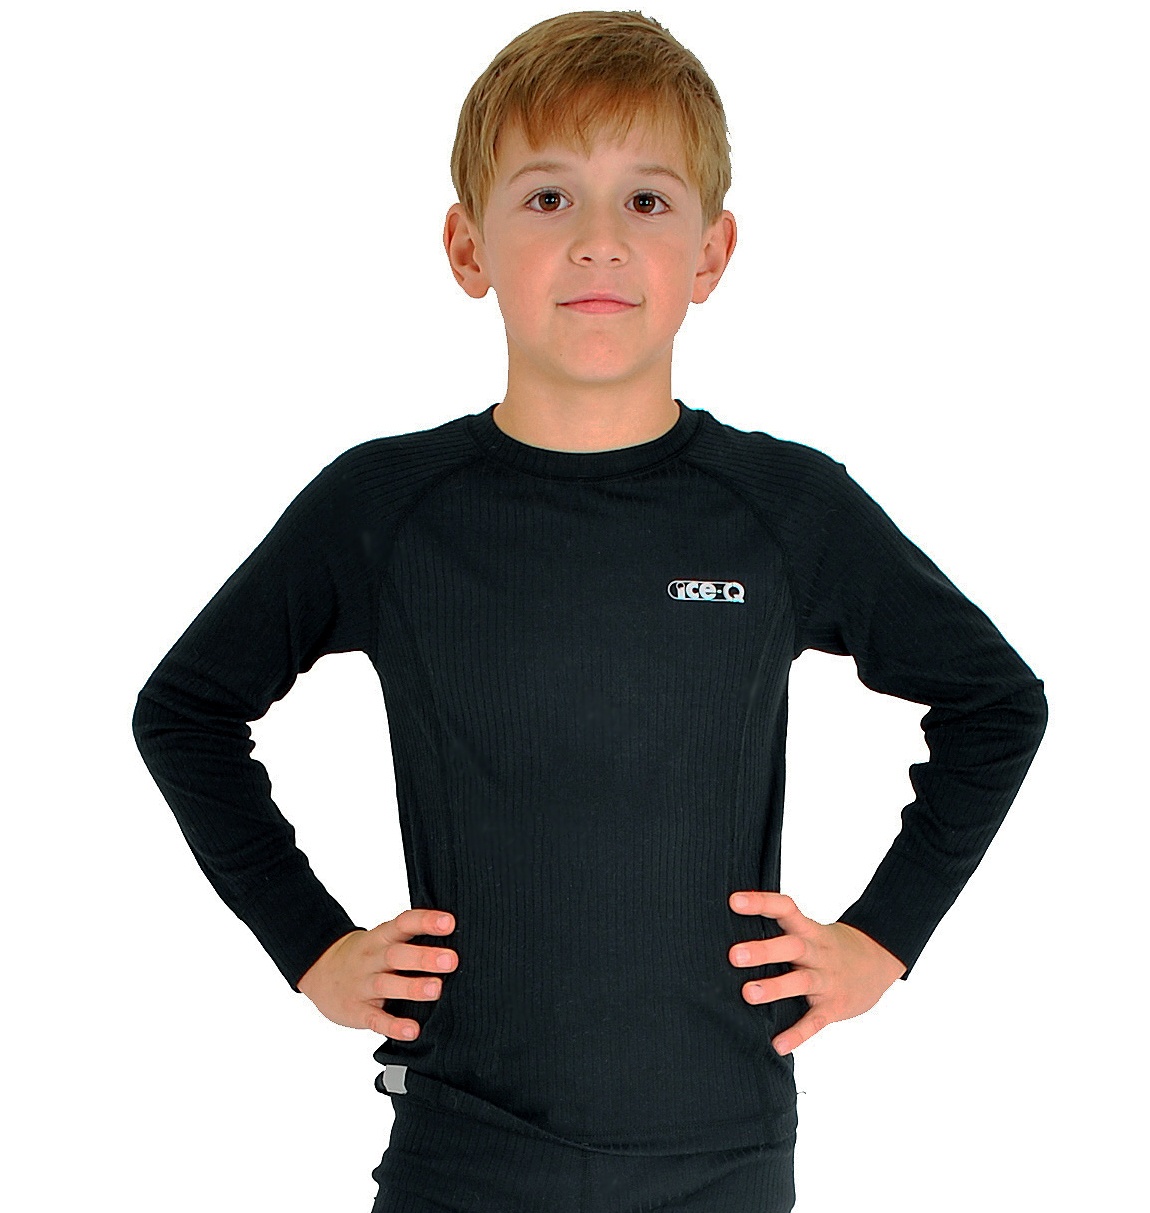 Juniorska koszulka termoaktywna Ice-Q Smart Kid Black